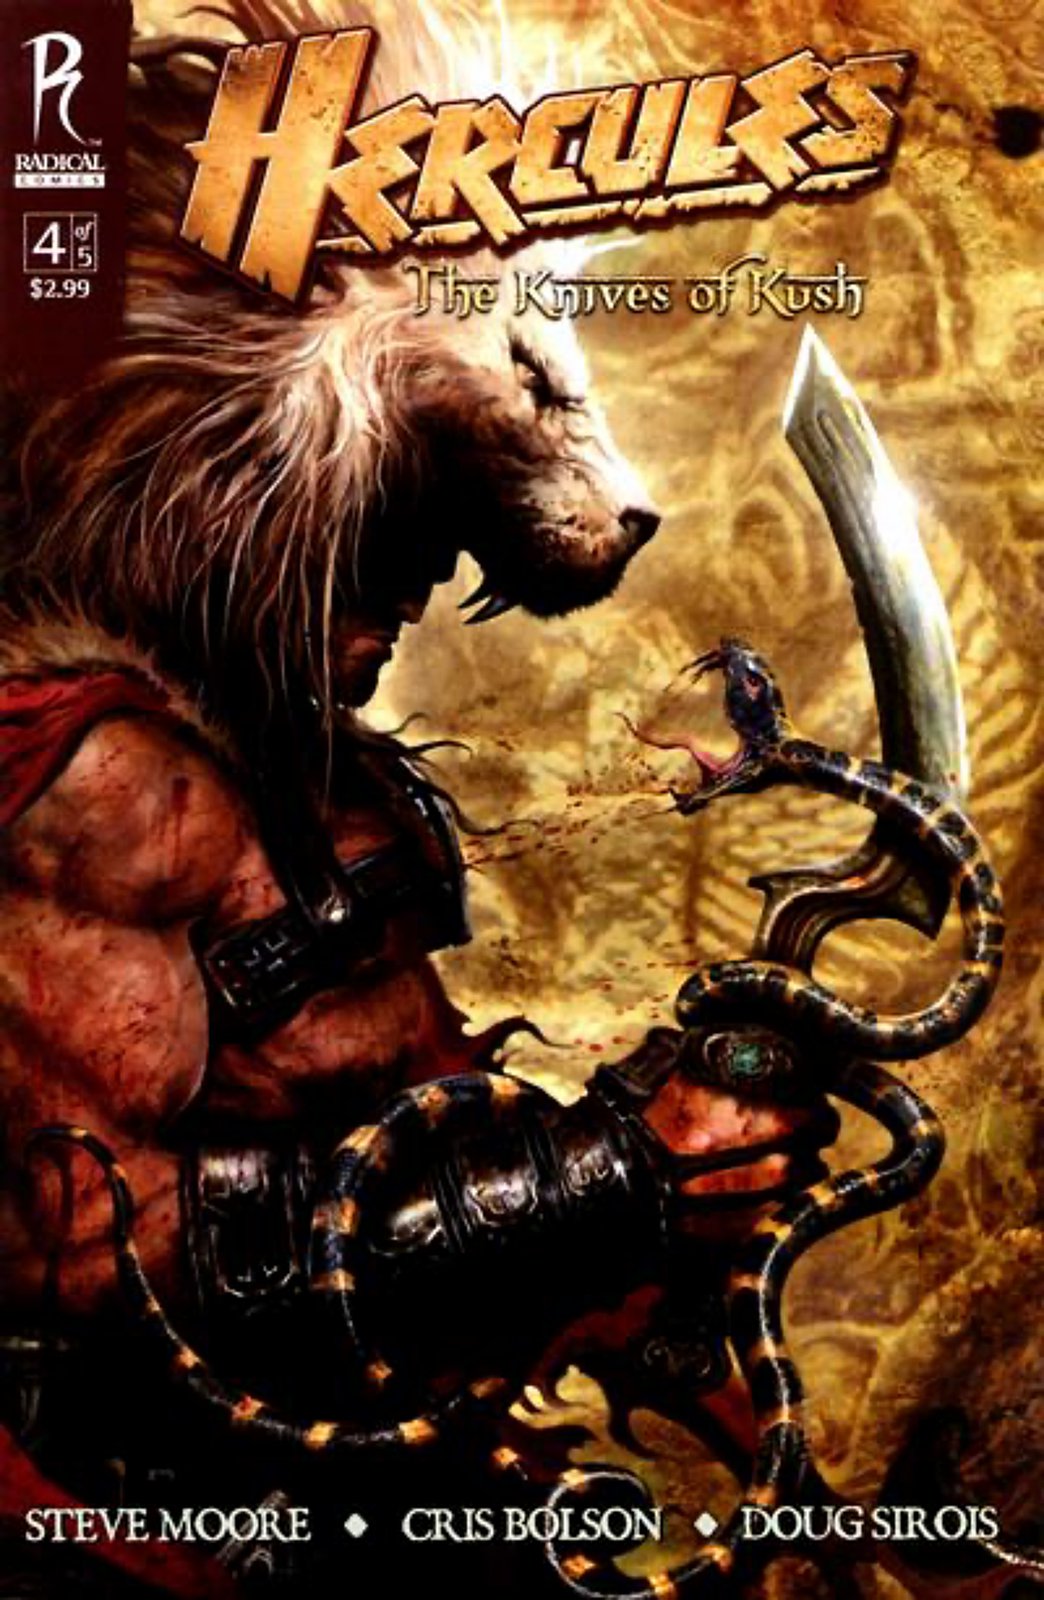 Hercules: The Knives of Kush #4A (2009) Radical Comics